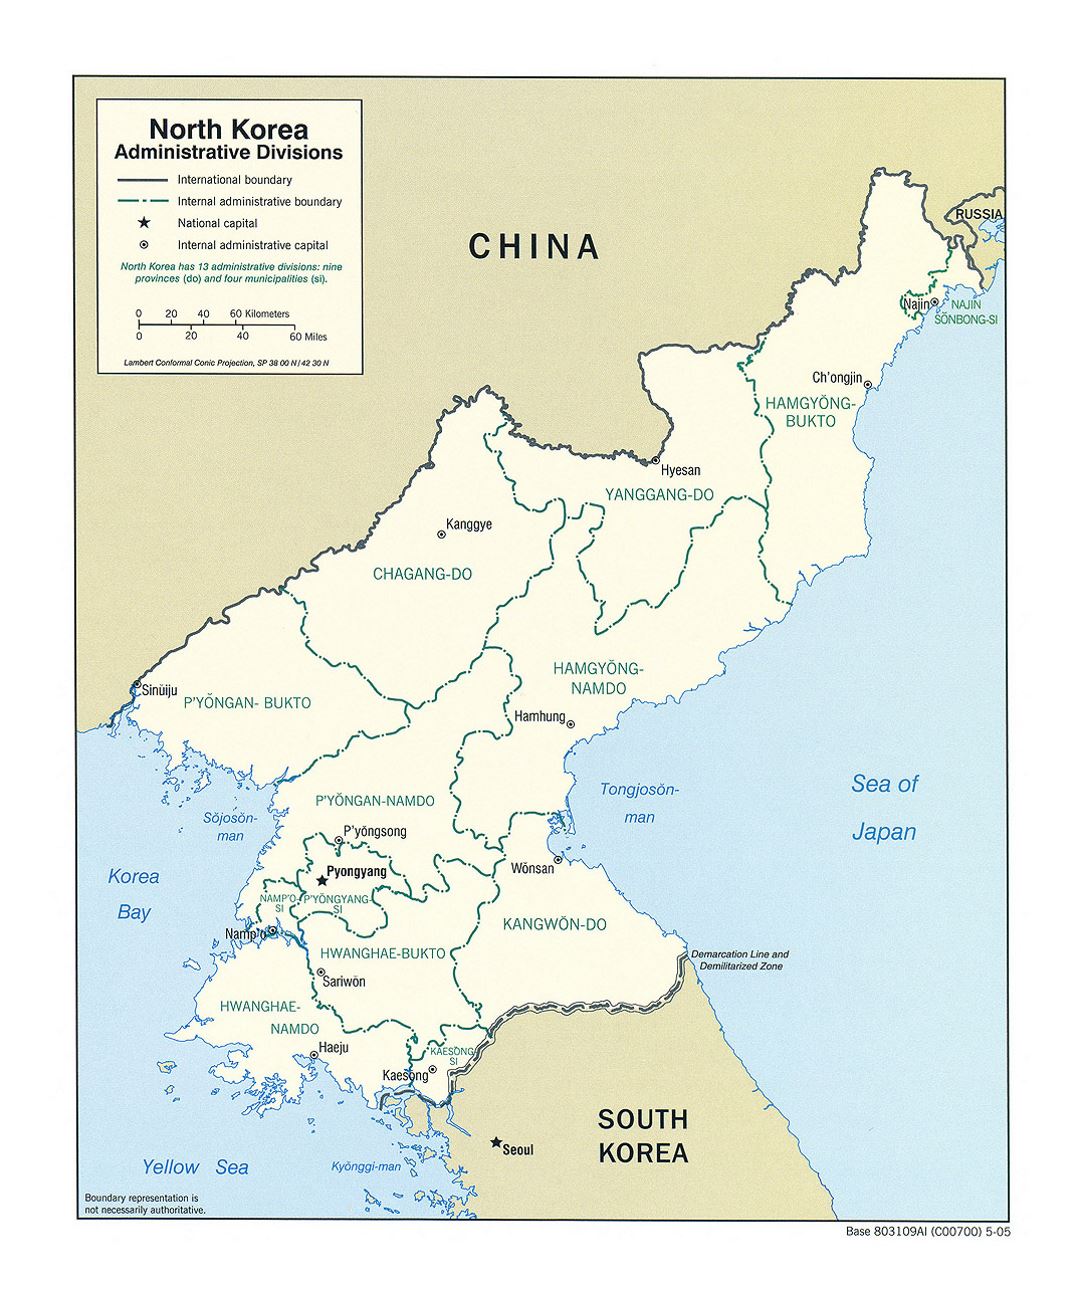 Detallado mapa de administrativas divisiones de Corea del Norte - 2005